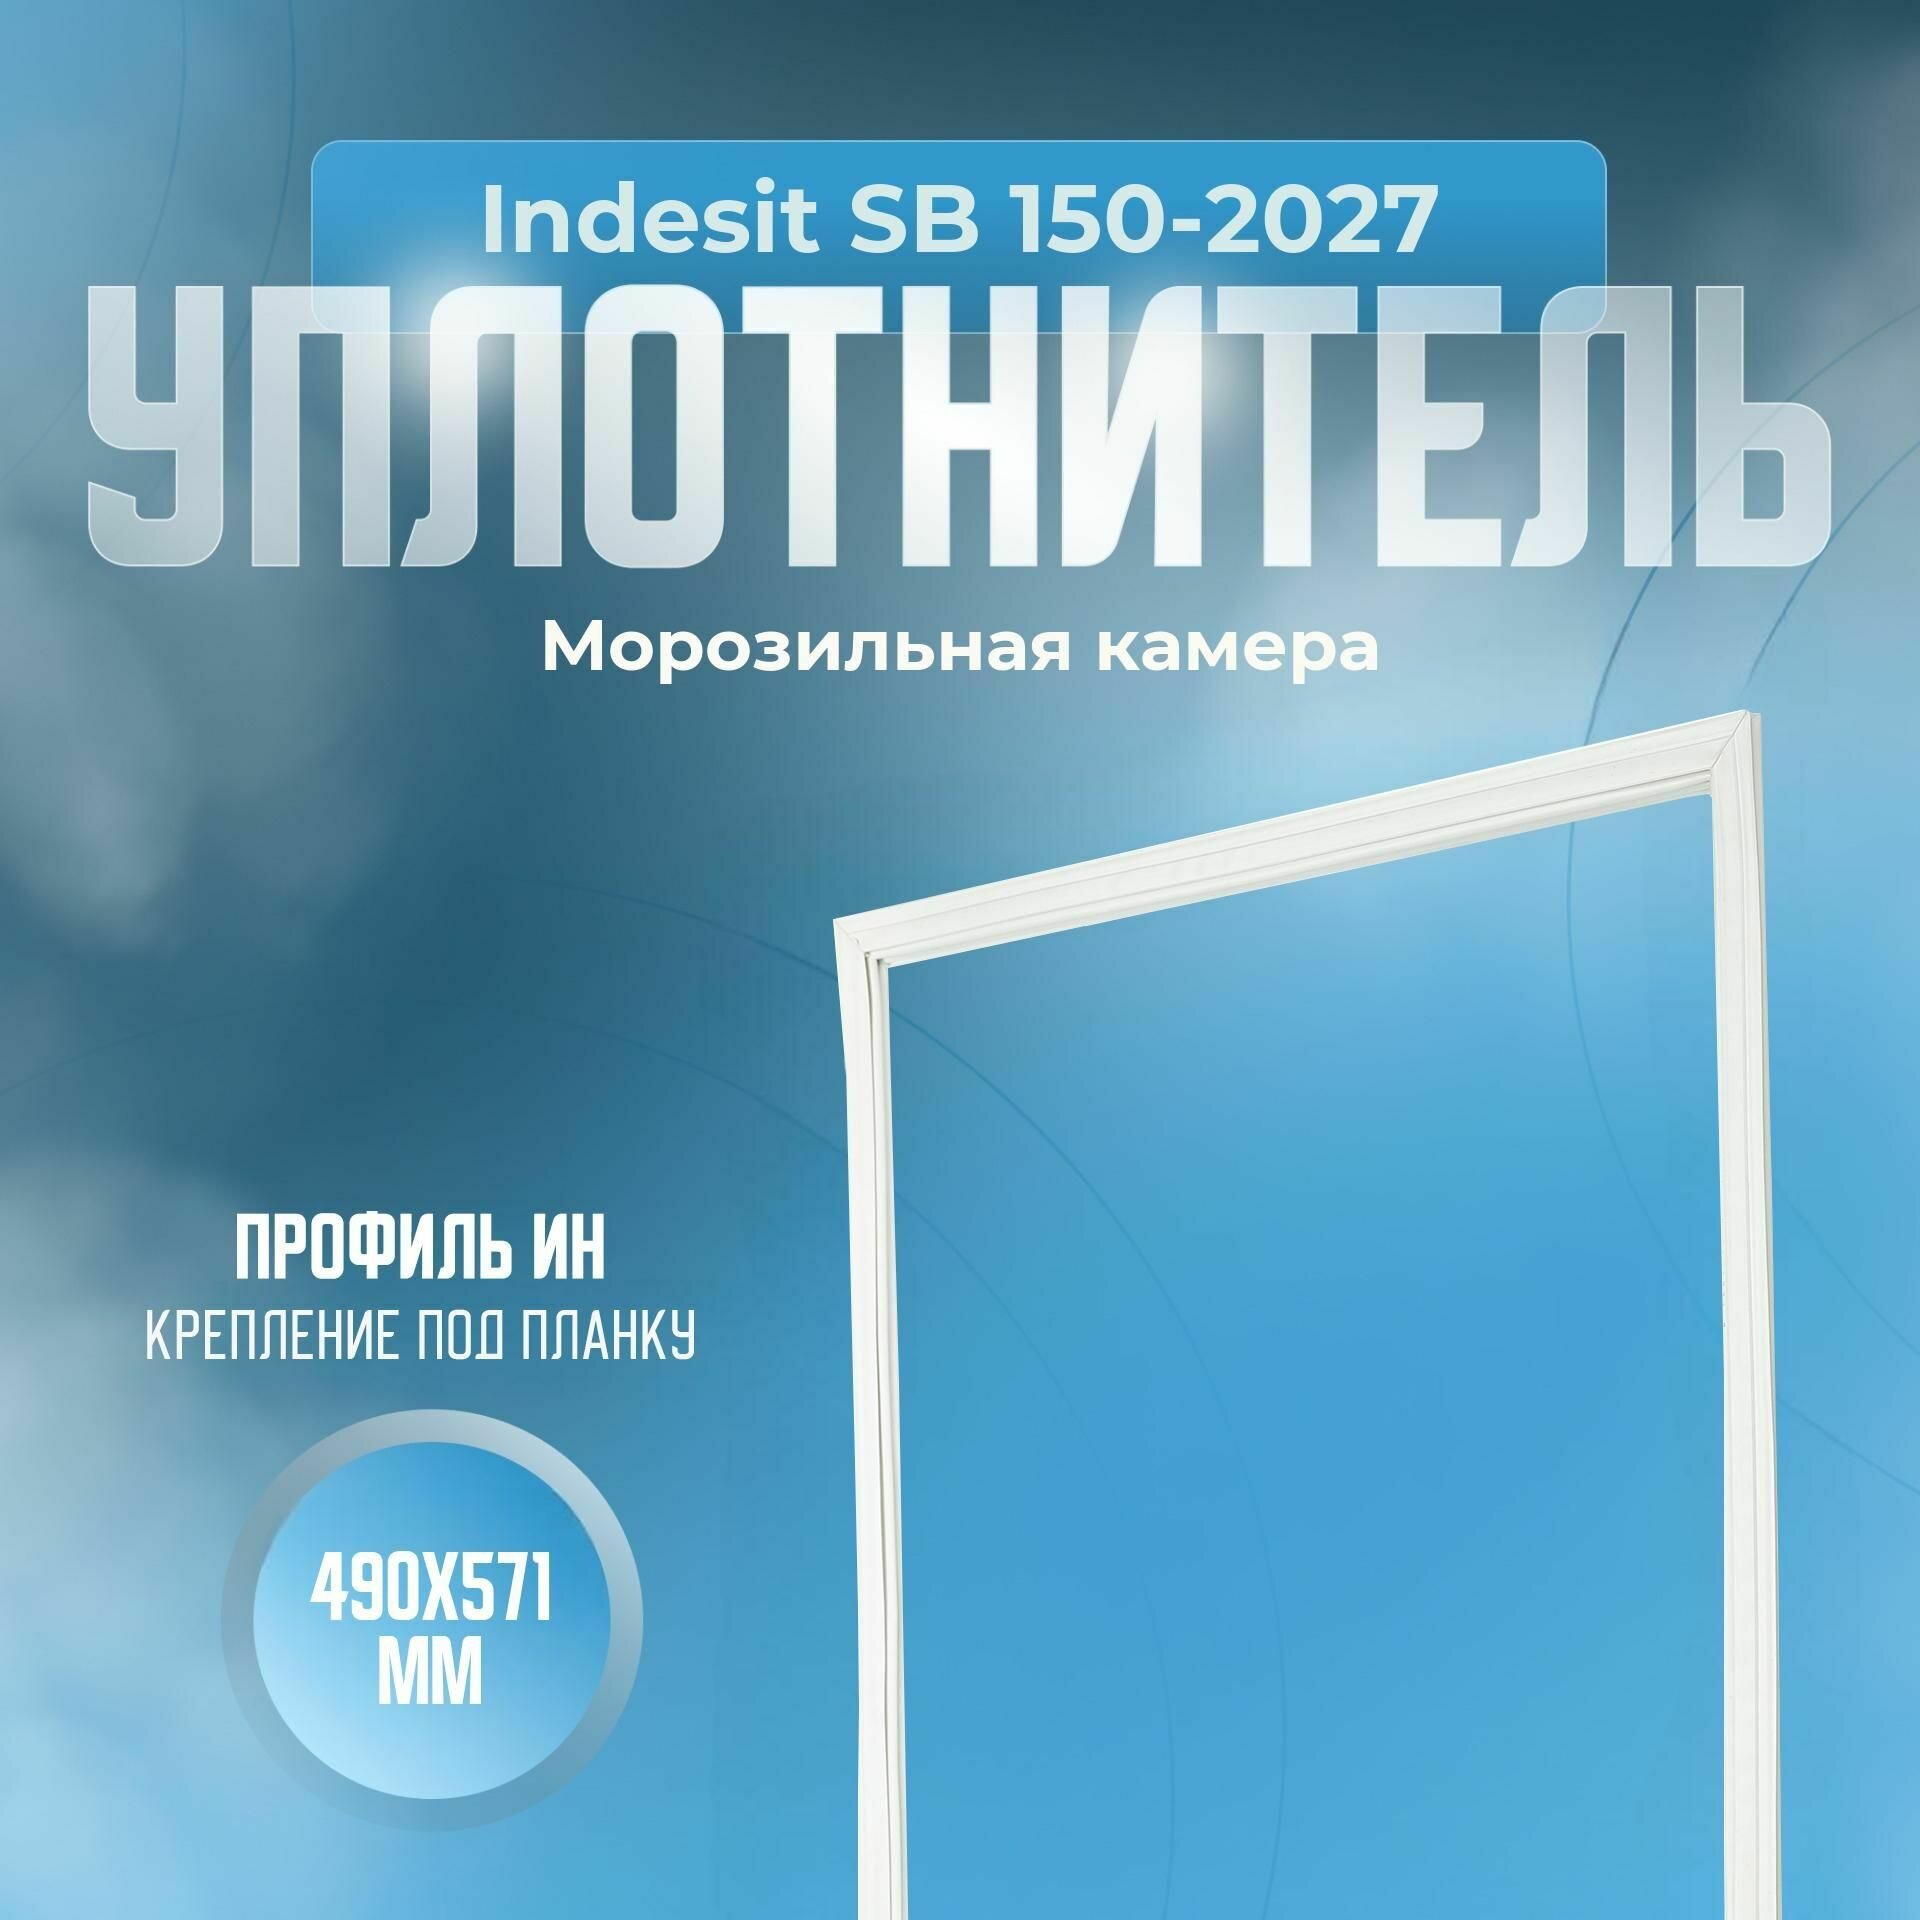 Уплотнитель Indesit SB 150-2027. м. к, Размер - 490x571 мм. ИН